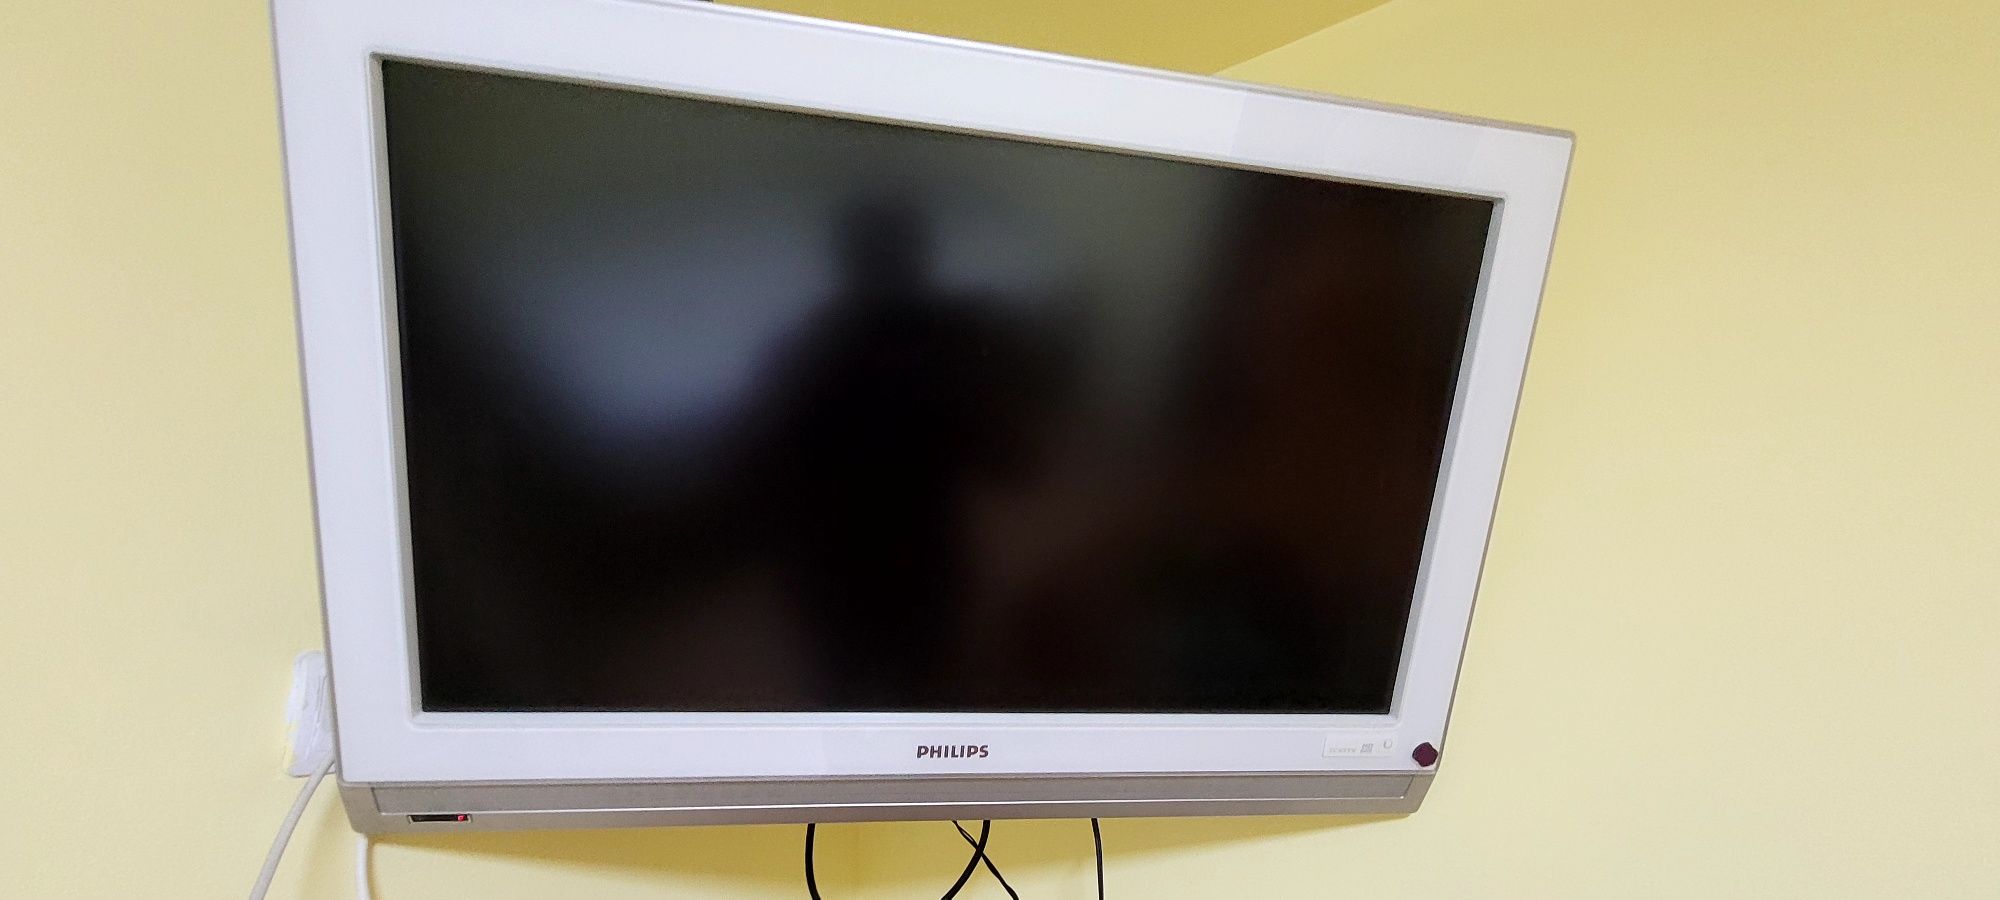 TV Philips digital model 32PFL7602D 81 cm (32")